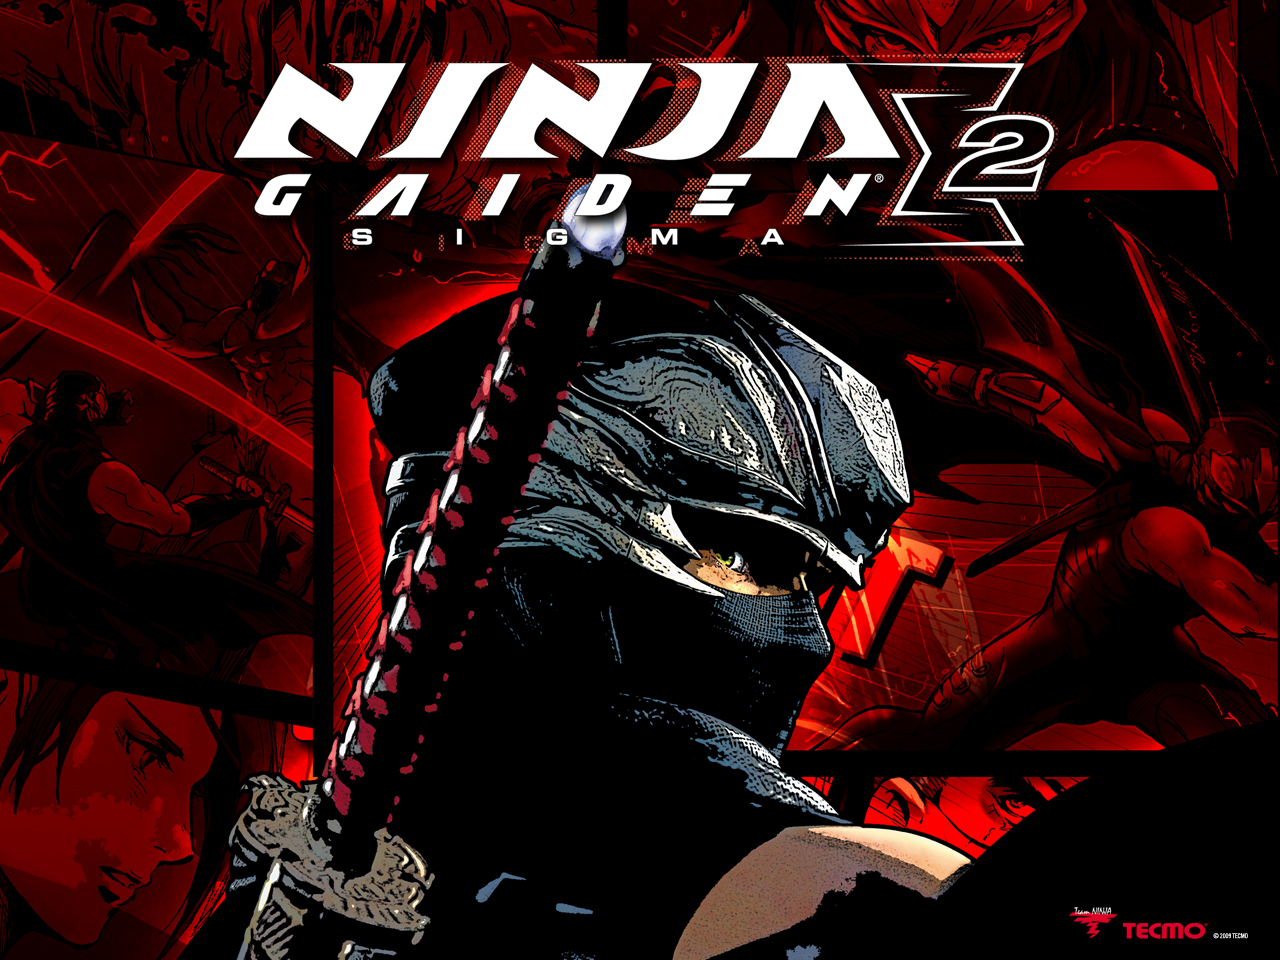 Ninja gaiden 3